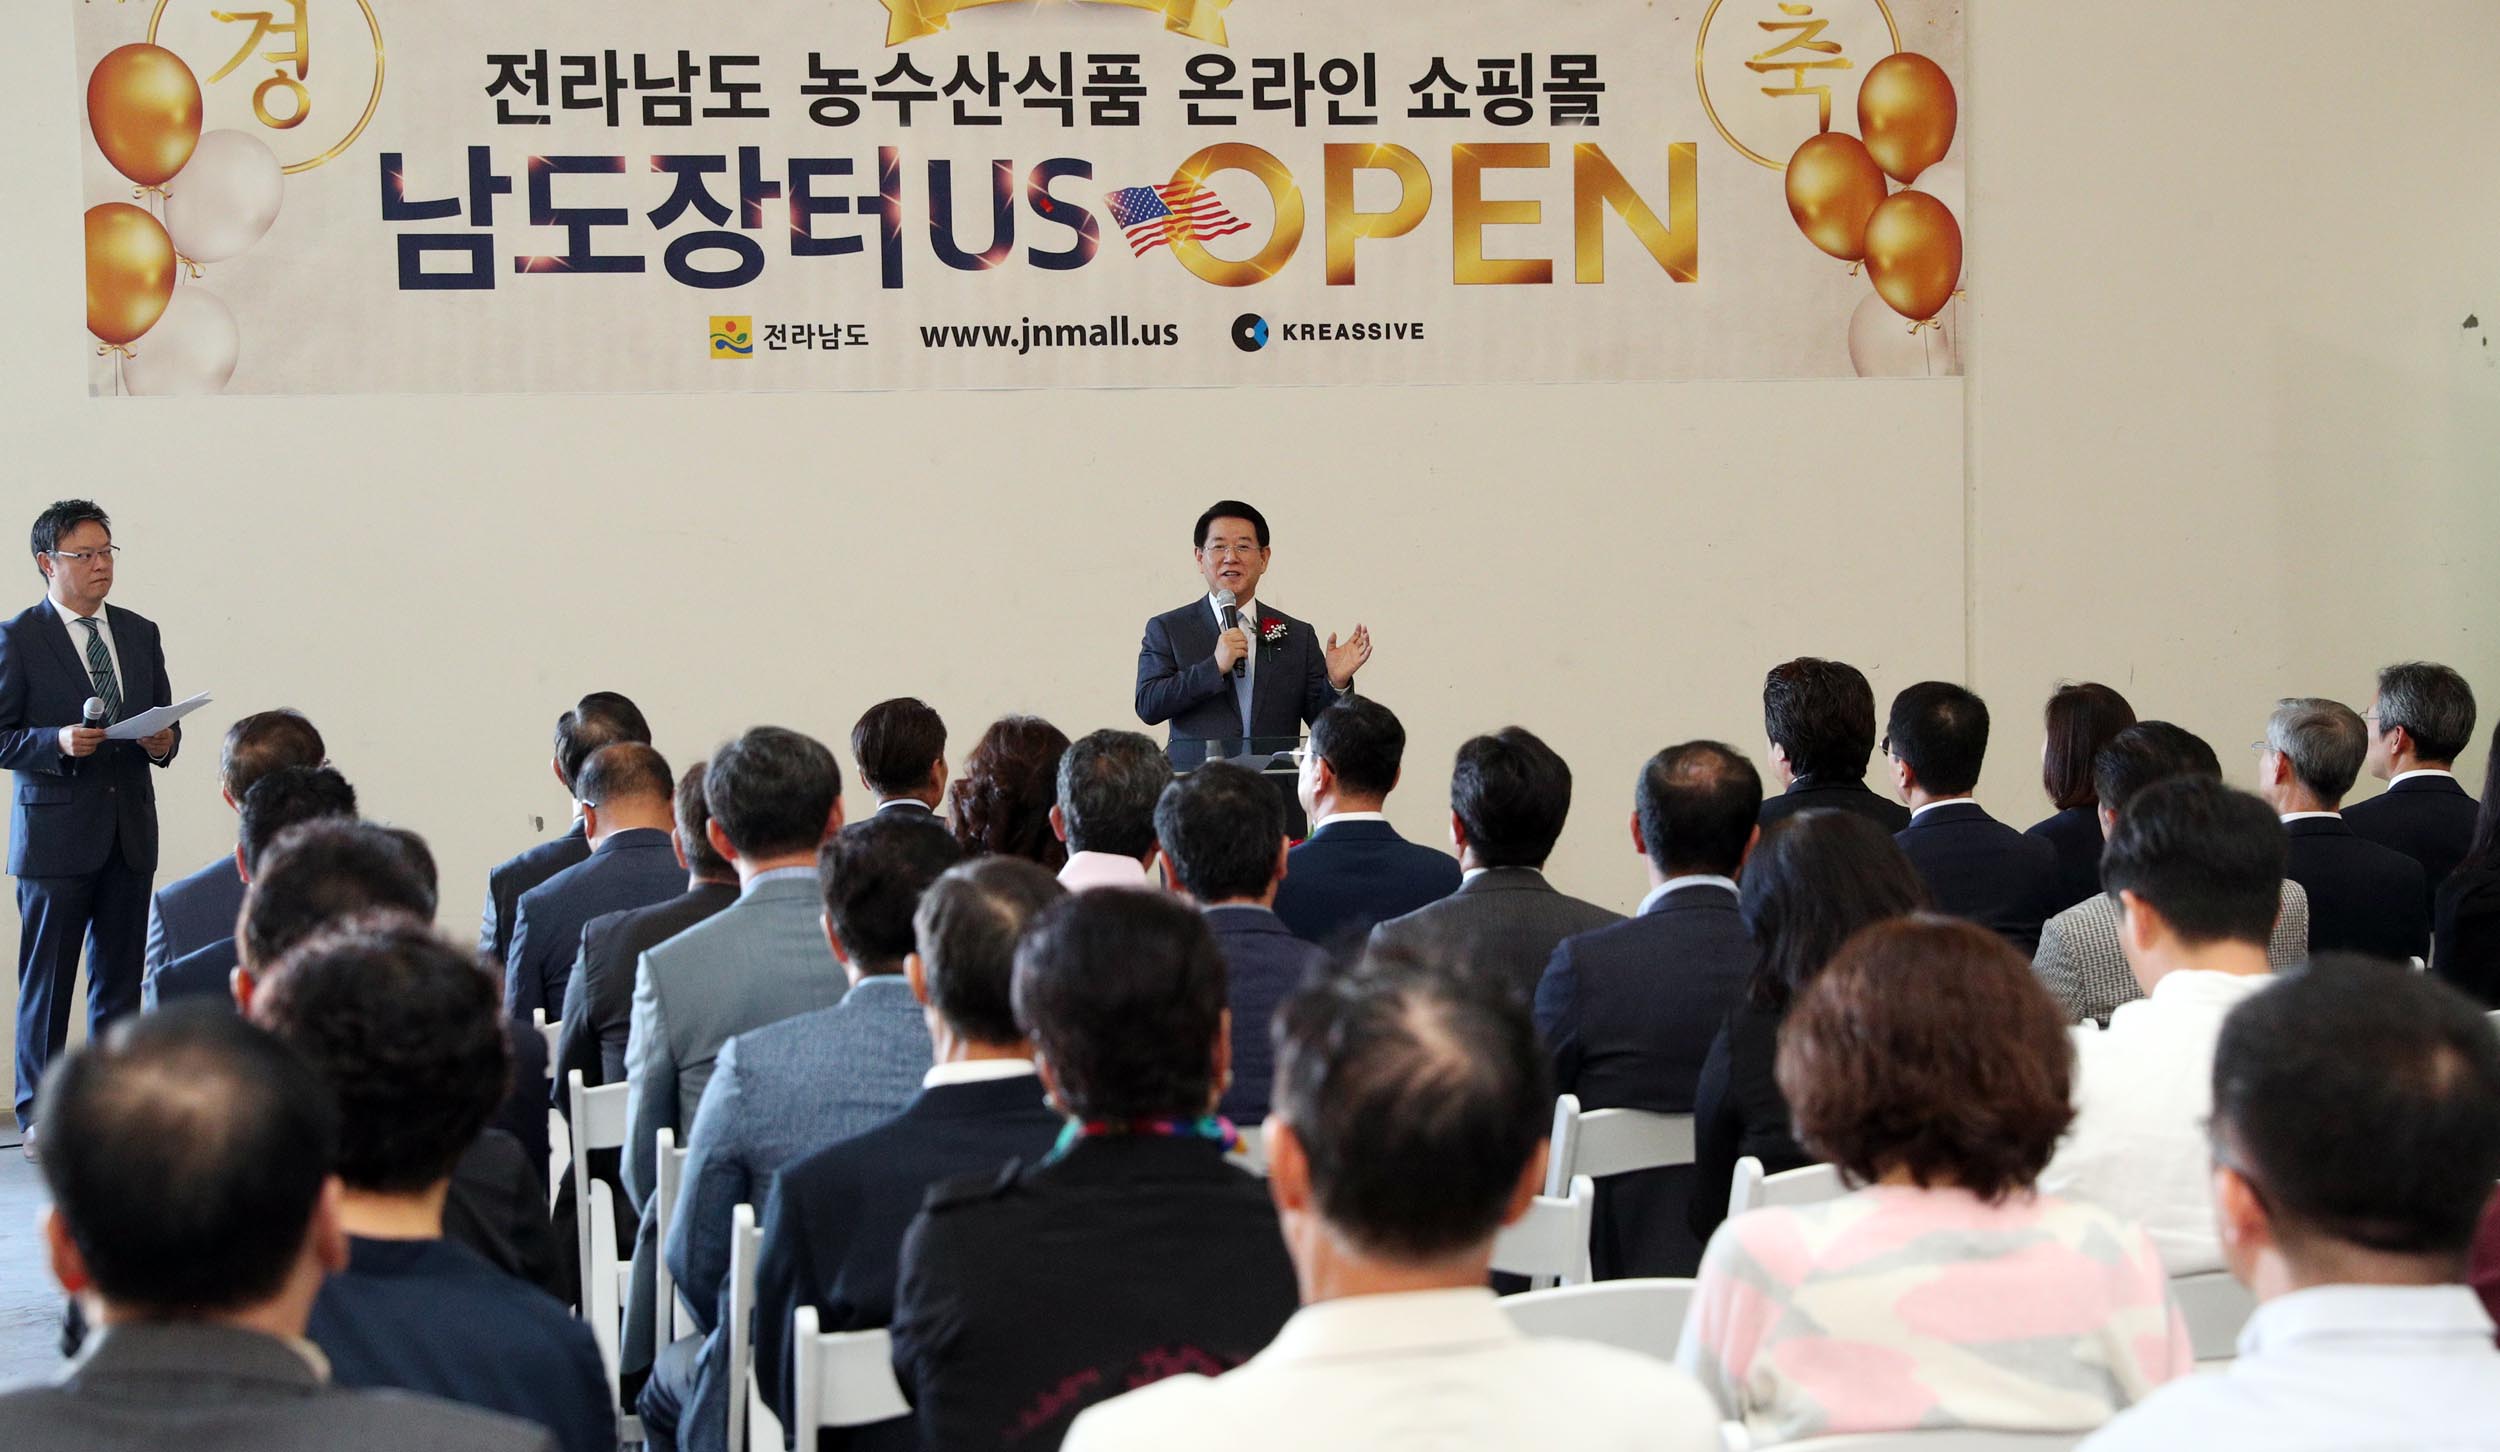 전라남도 농수산식품 전용 온라인 쇼핑몰인 '남도장터US' 공식 오픈식2